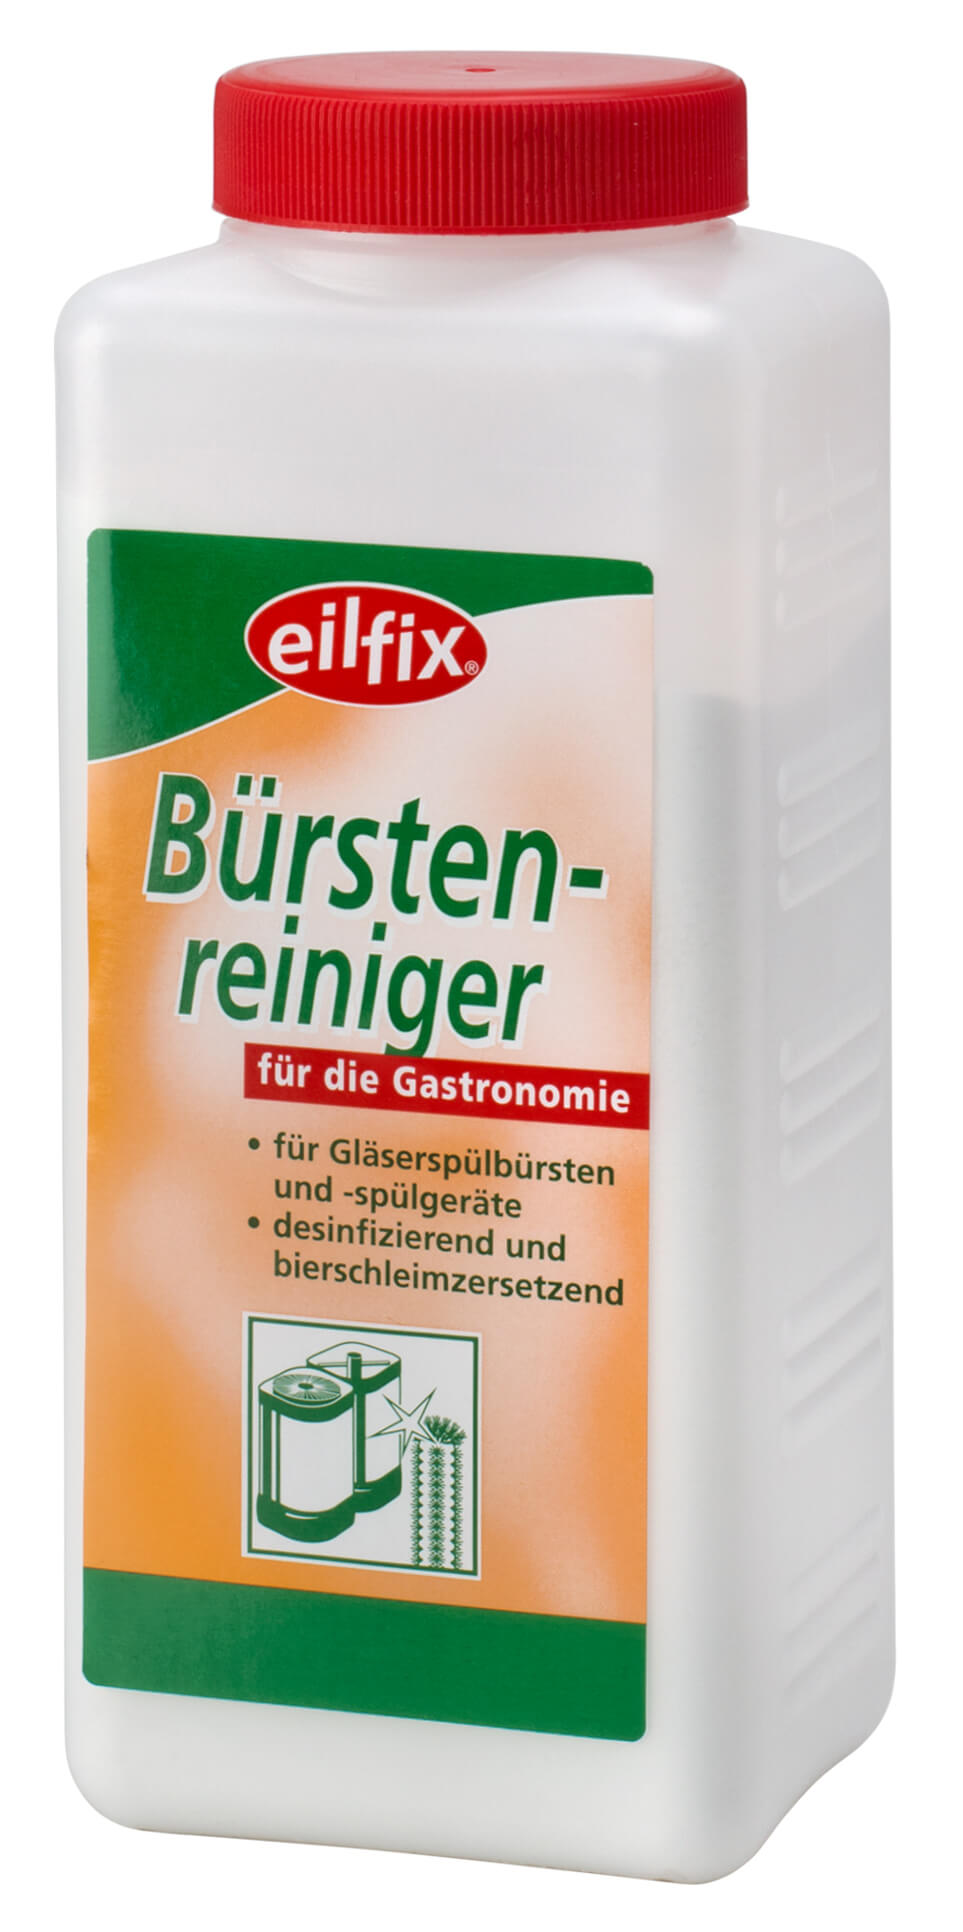 Eilfix Bürstenreiniger - 1kg